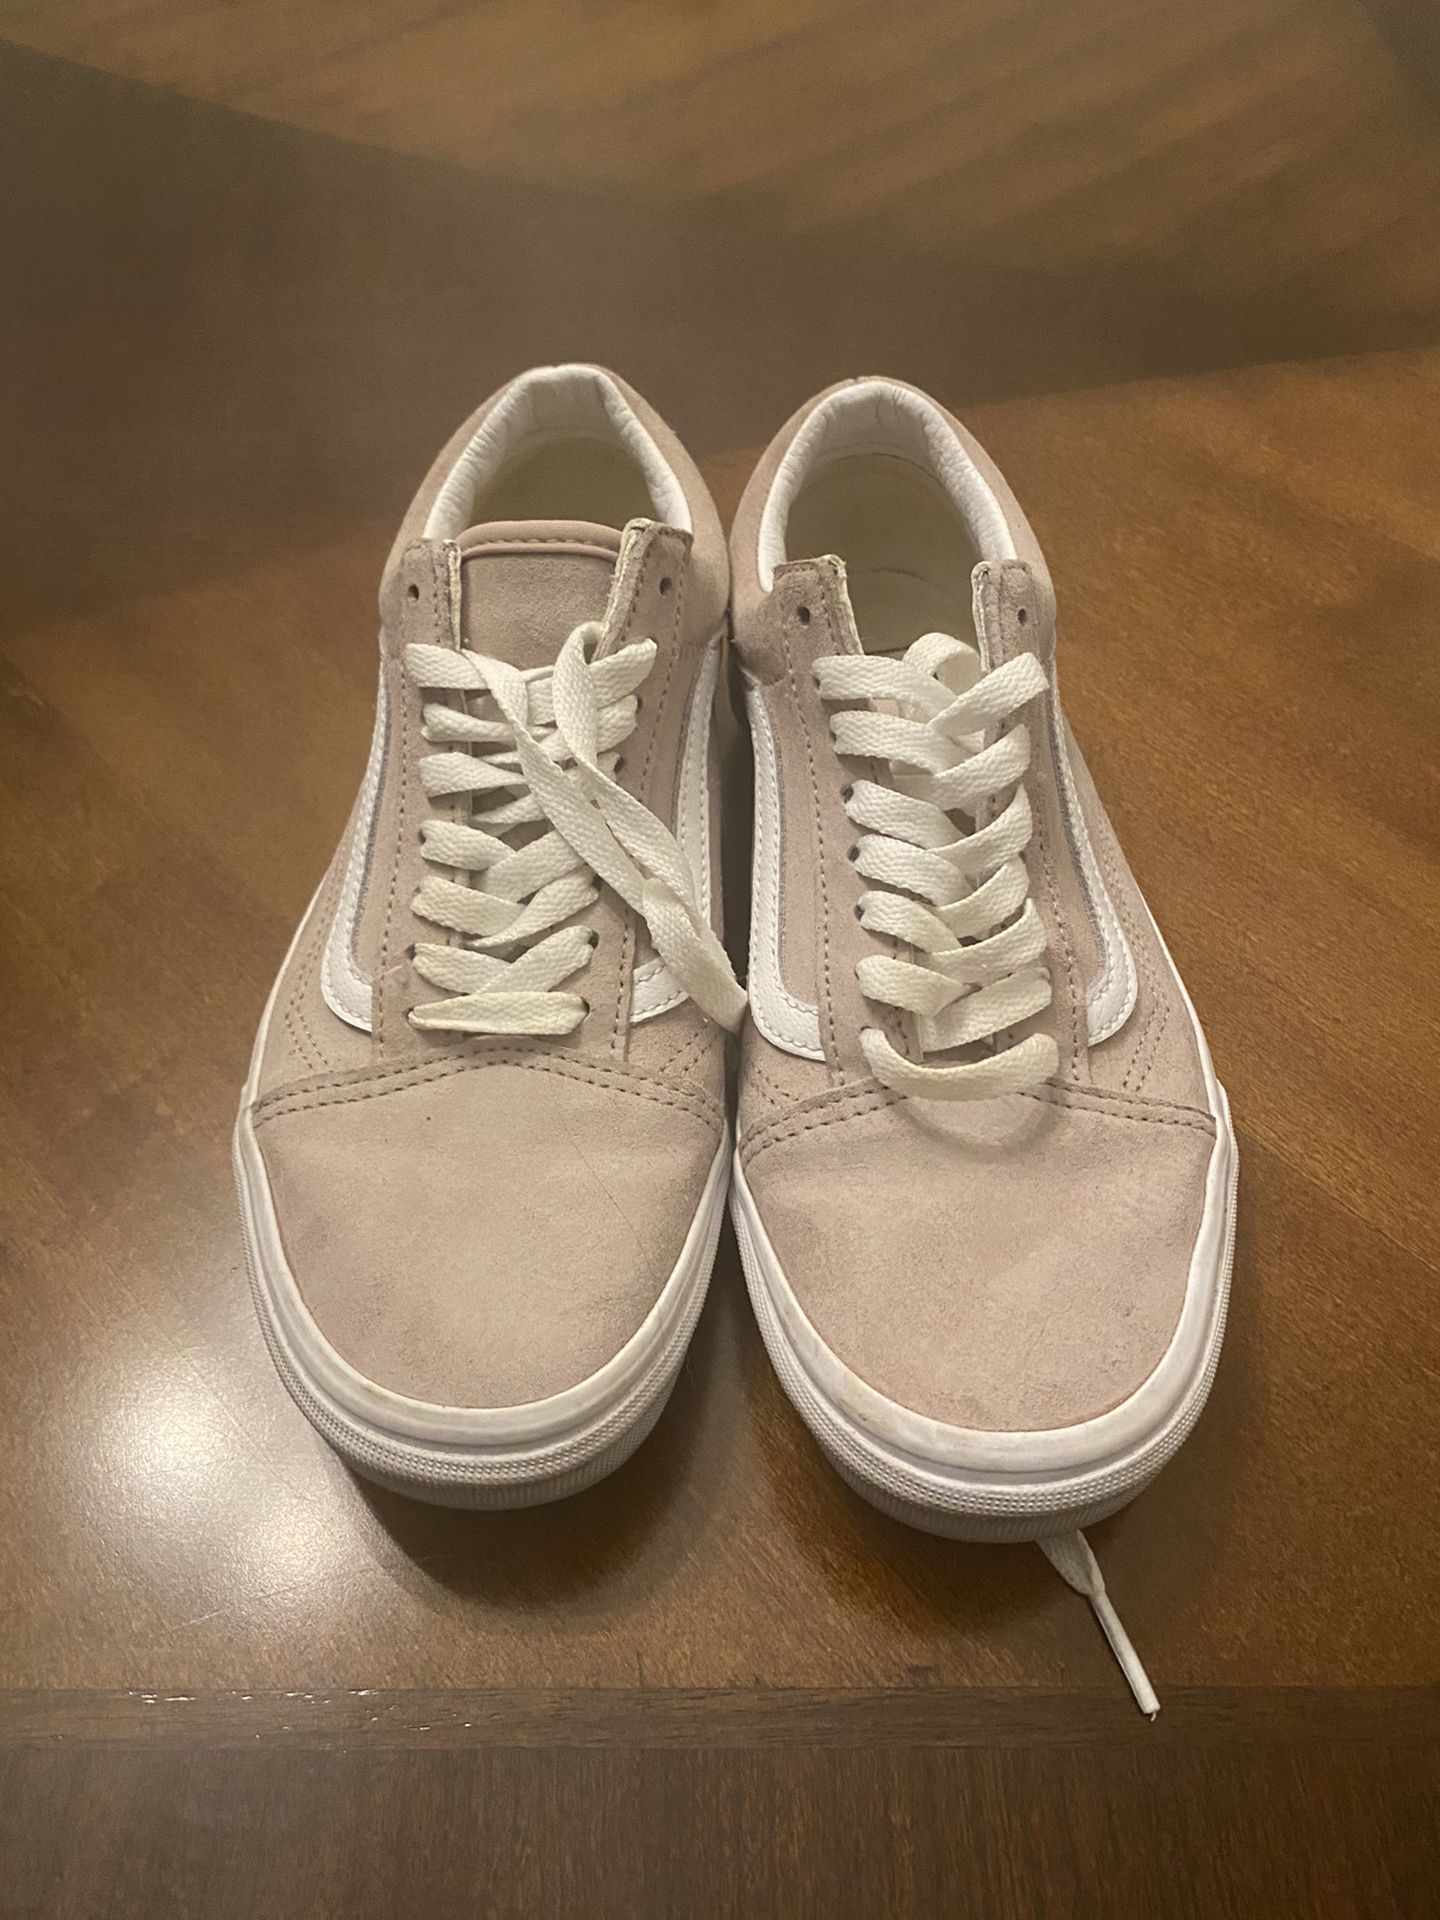 Vans shoes women’s size 8